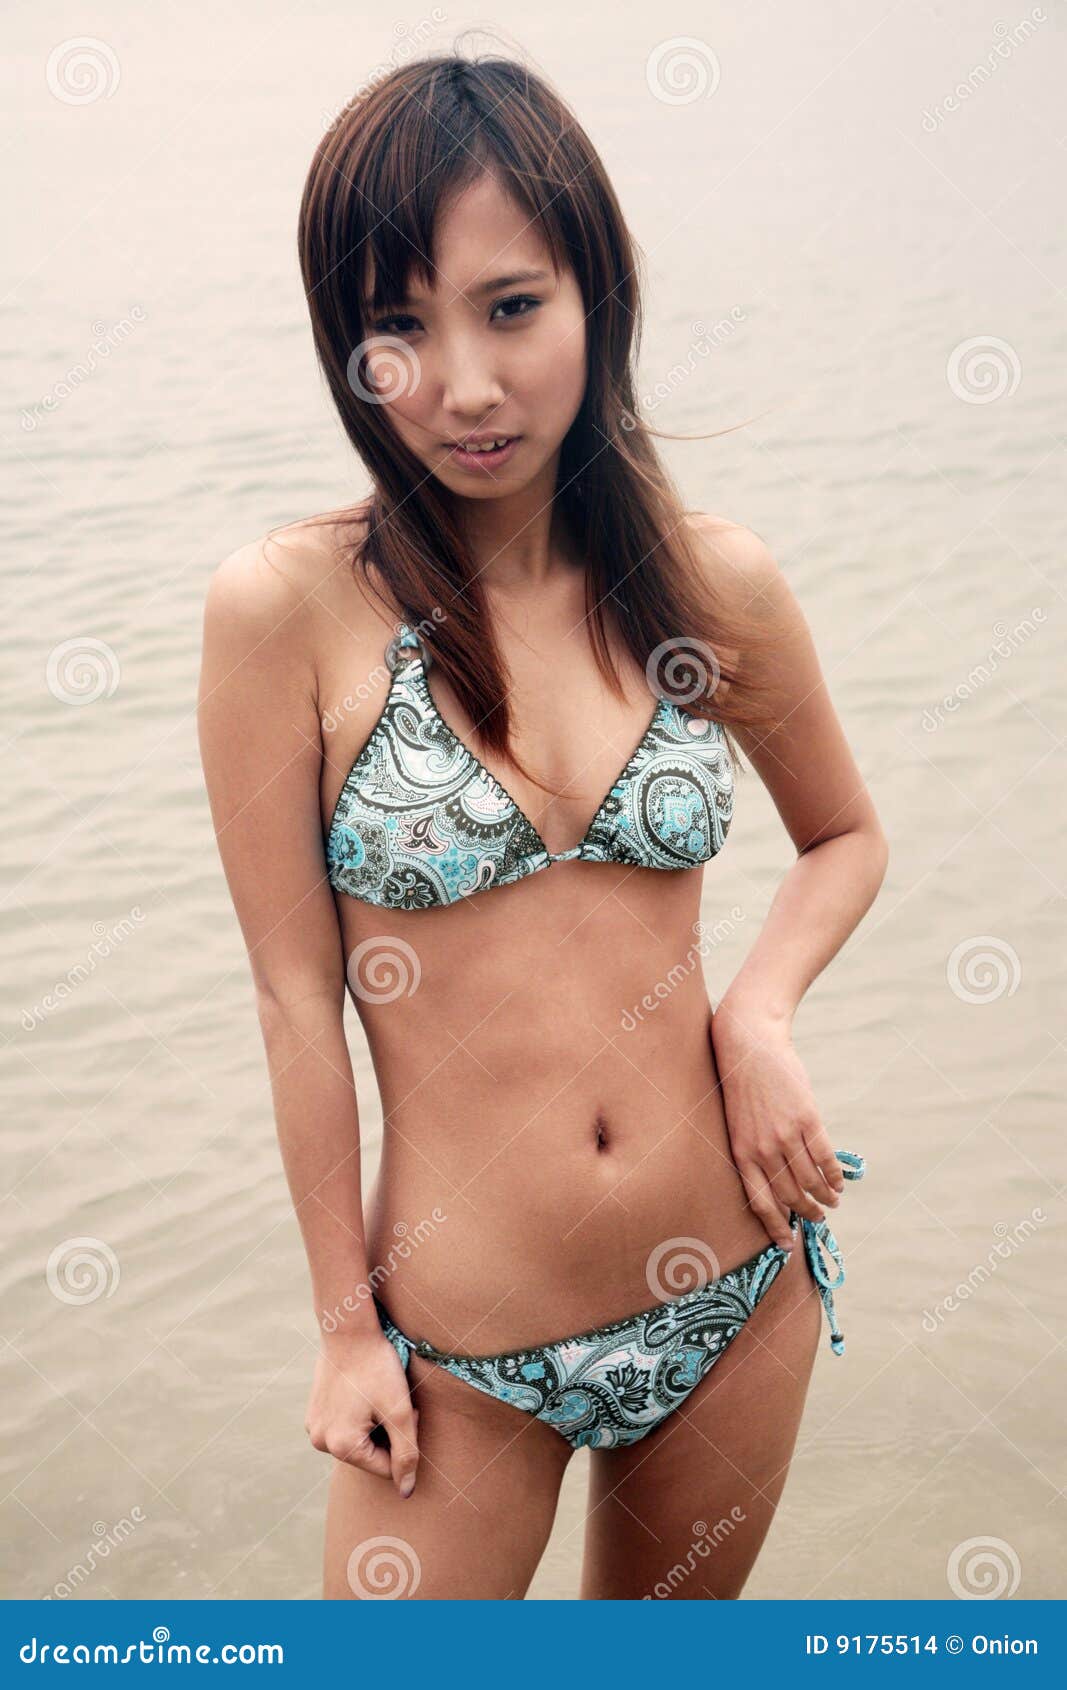 Cute asian women bikini